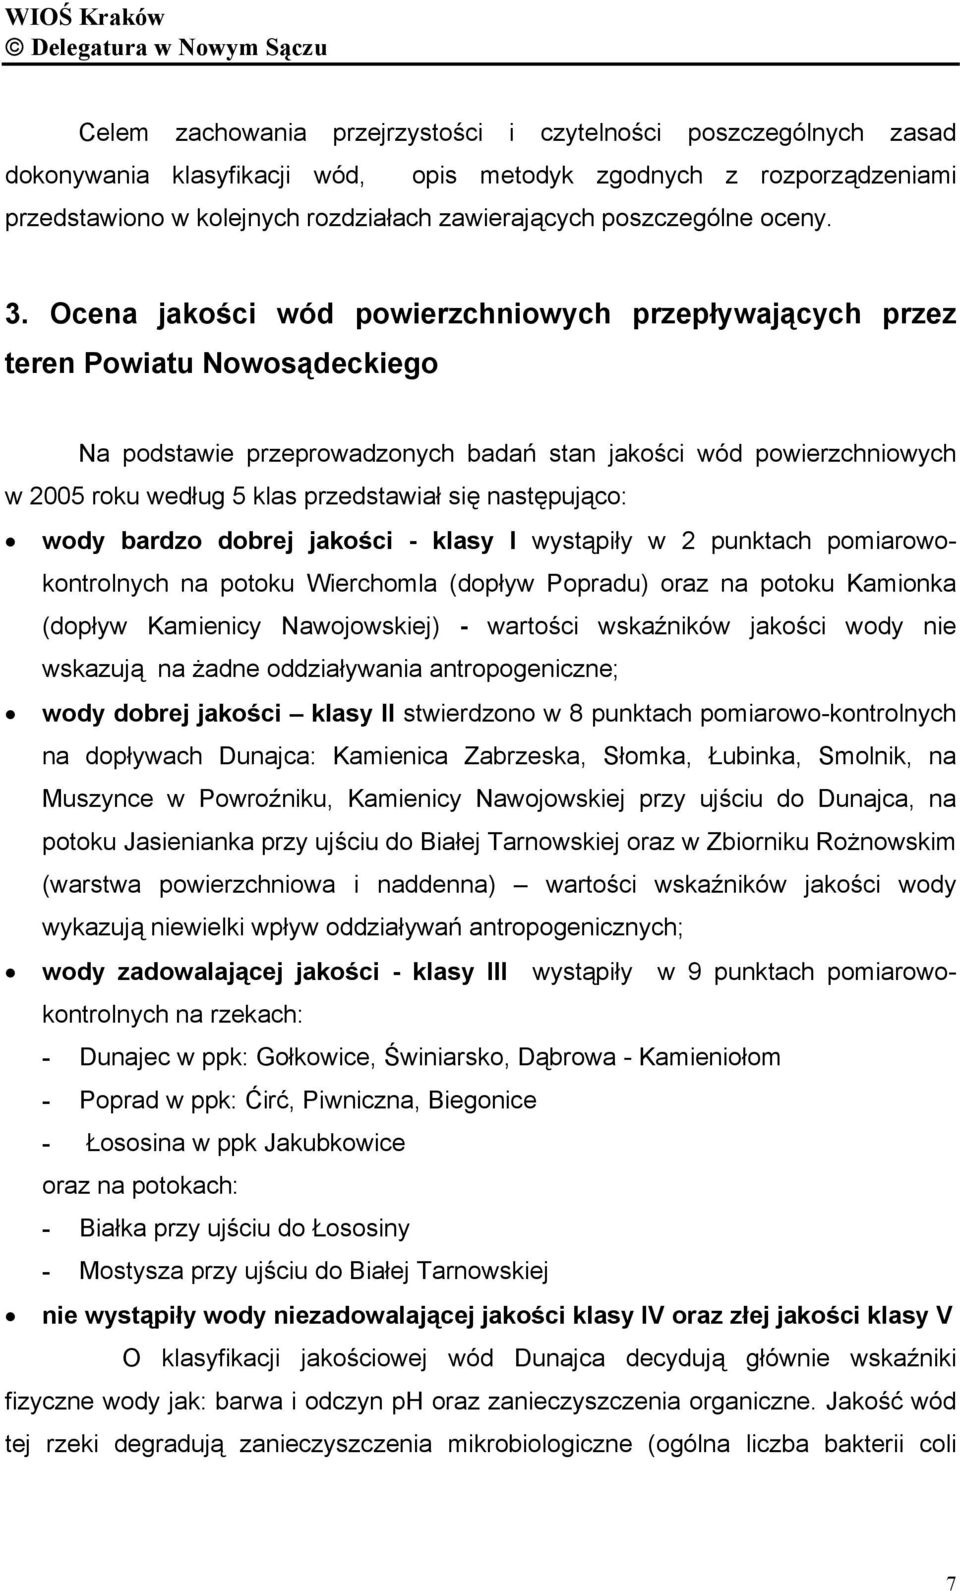 Ocena jakości wód powierzchniowych przepływających przez teren Powiatu Nowosądeckiego Na podstawie przeprowadzonych badań stan jakości wód powierzchniowych w 2005 roku według 5 klas przedstawiał się